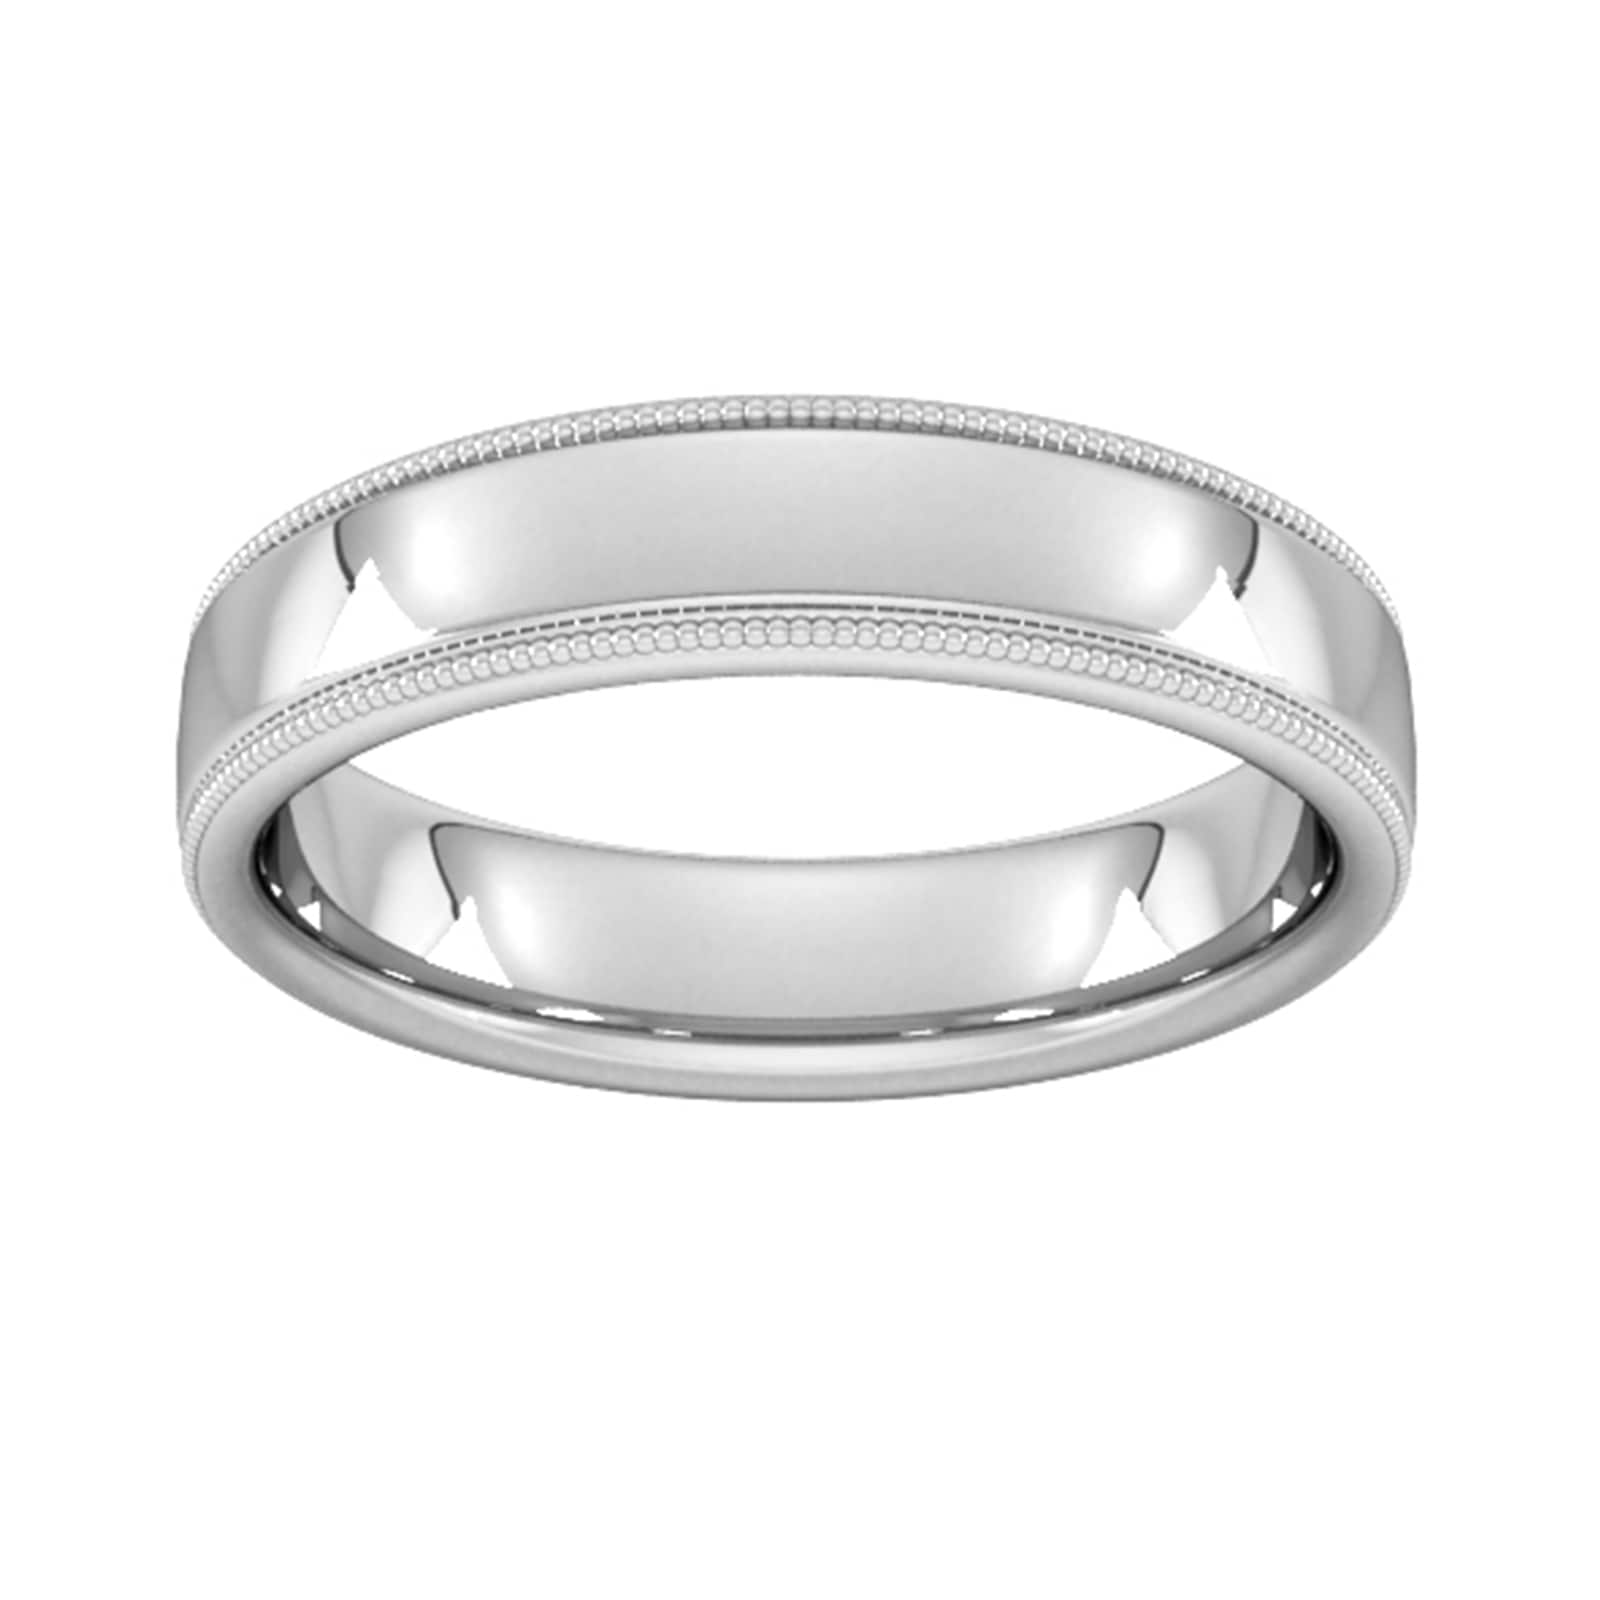 5mm Slight Court Heavy Milgrain Edge Wedding Ring In 9 Carat White Gold - Ring Size I